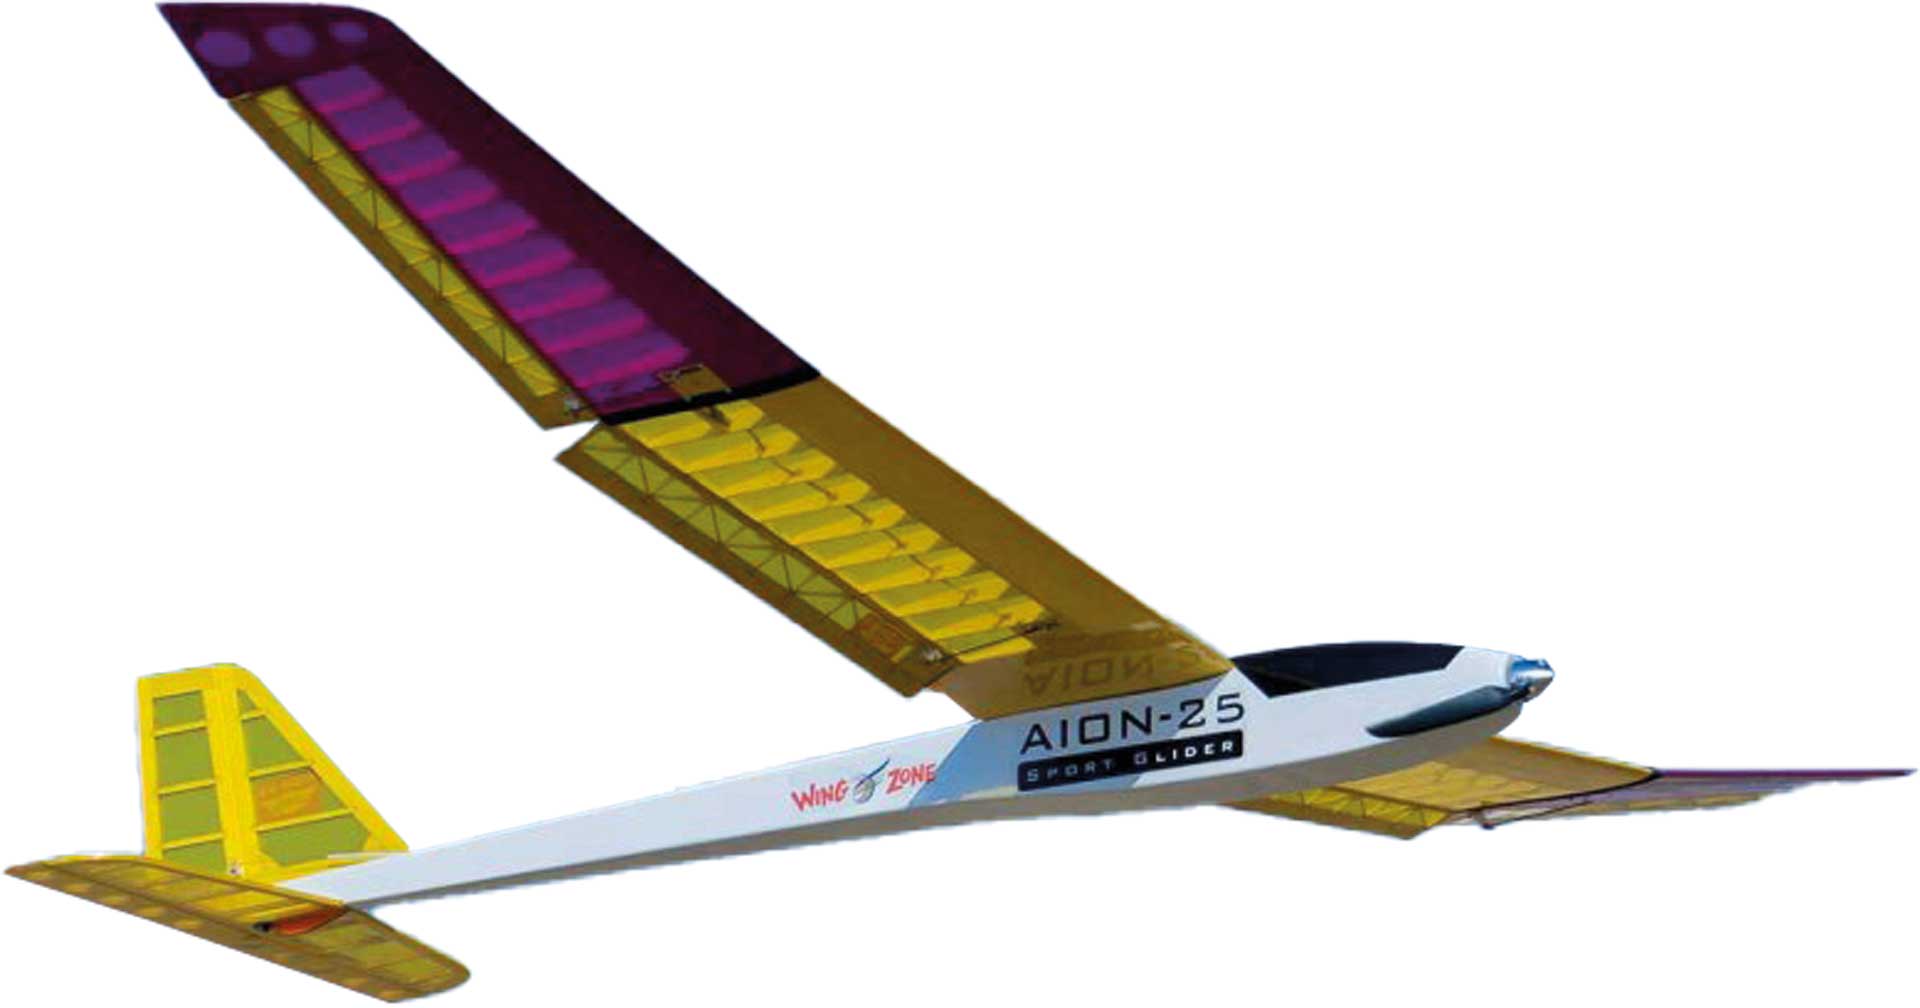 PICHLER AION glider / 2500 mm wooden kit